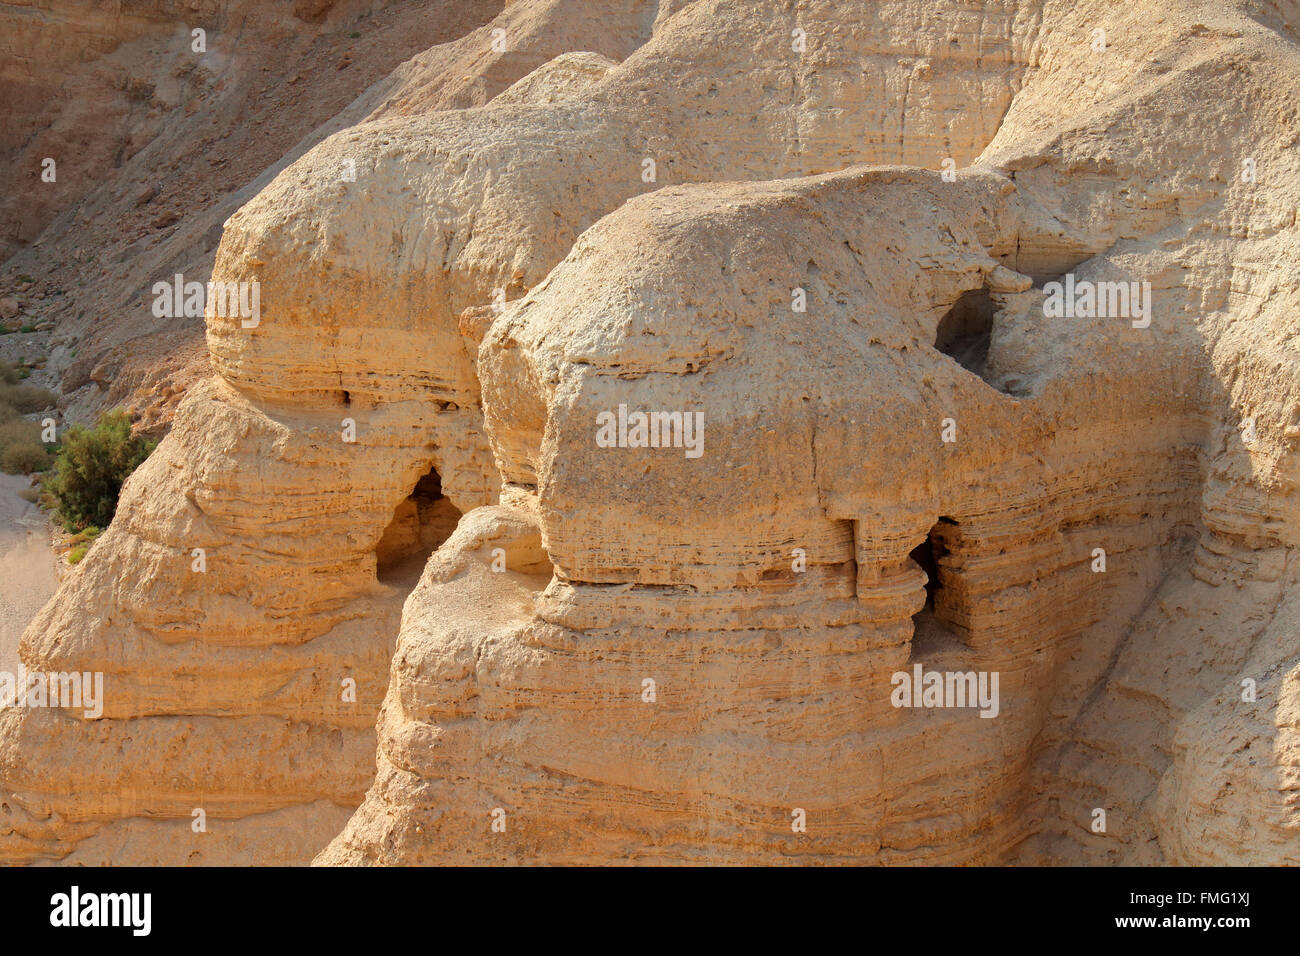 Las cuevas de Qumran en el sitio arqueológico en el desierto de Judea de la Ribera Occidental, Israel Foto de stock